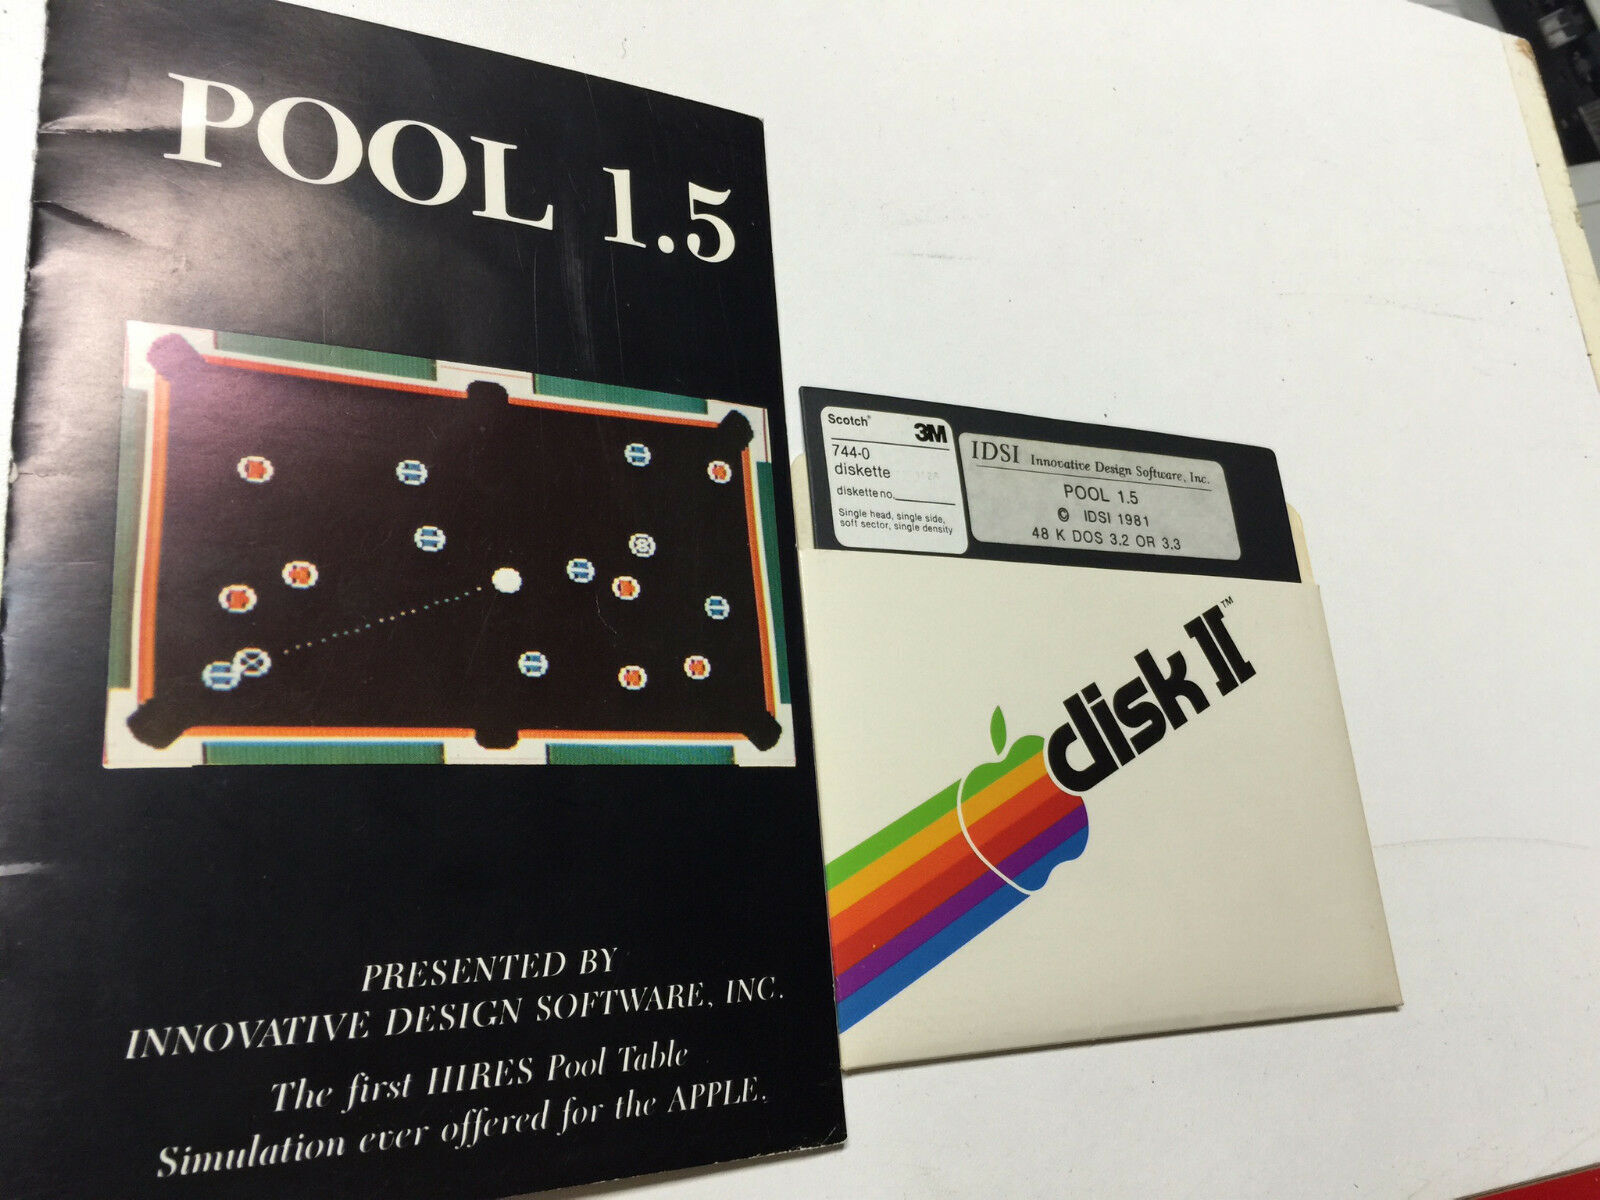 POOL 1.5 IDSI 1981 HIRES Table Game Apple ii II Plus iie old Vintage